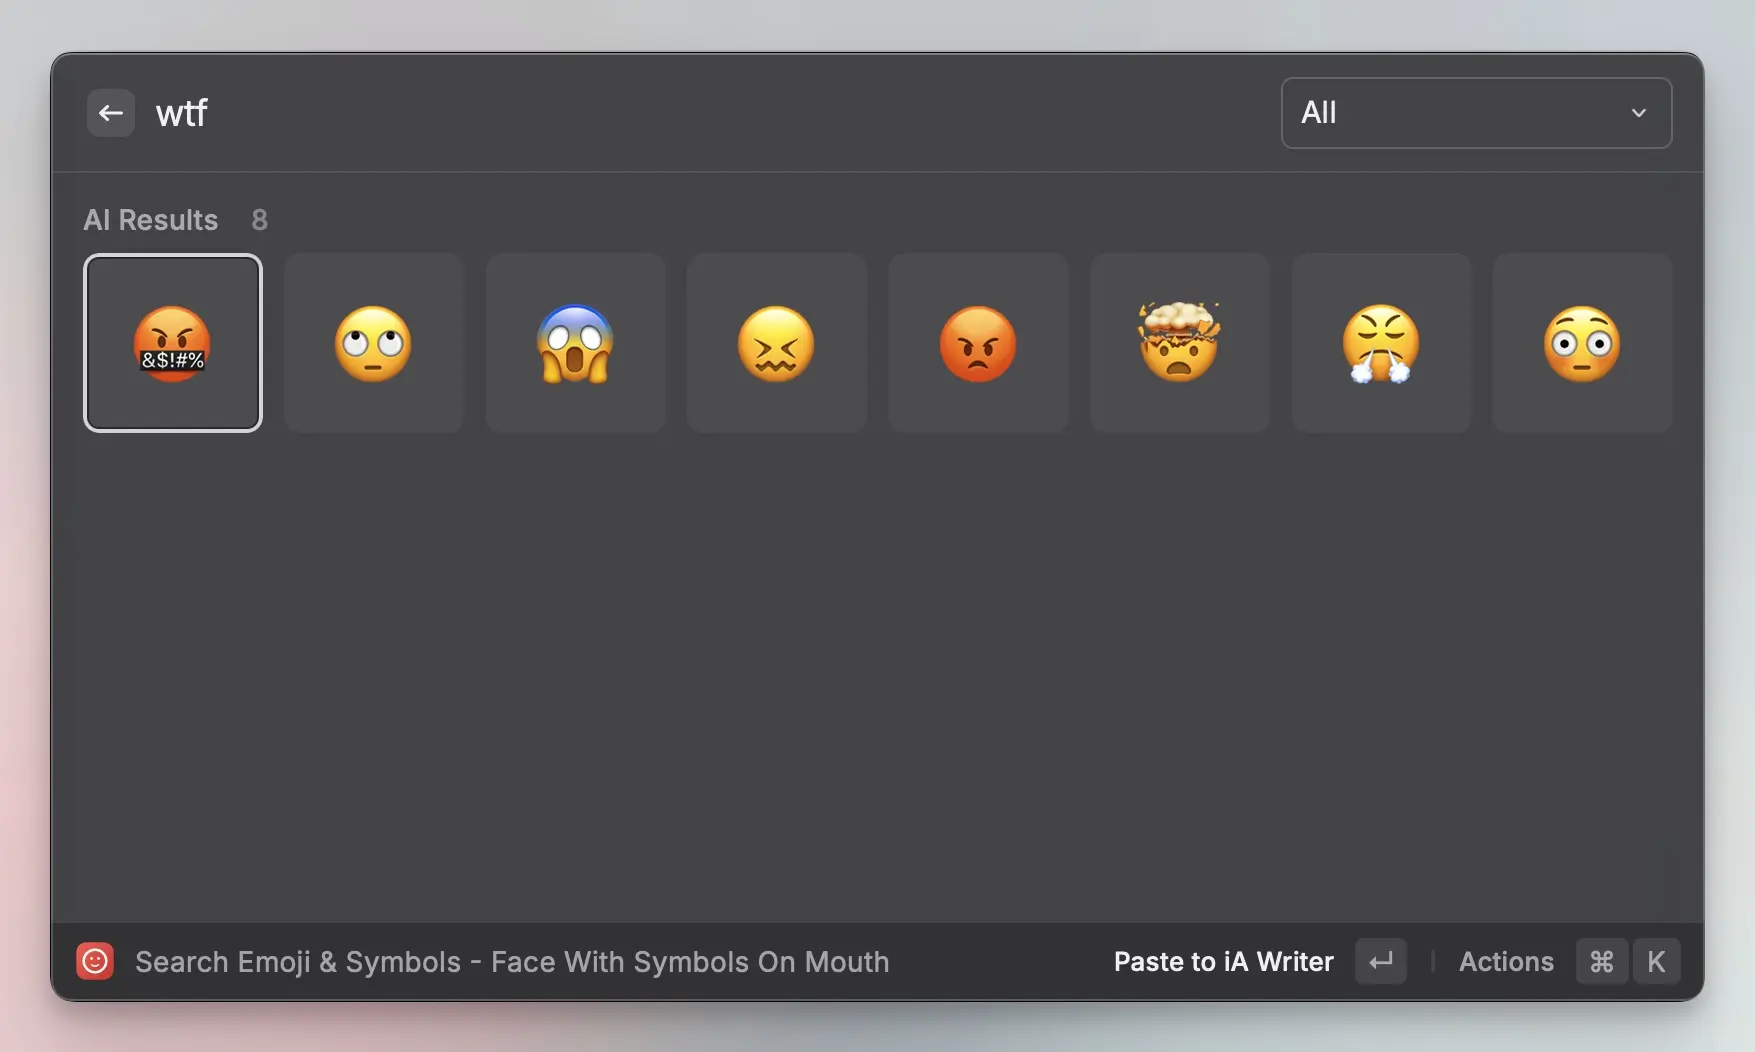 Search Emoji & Symbols with AI